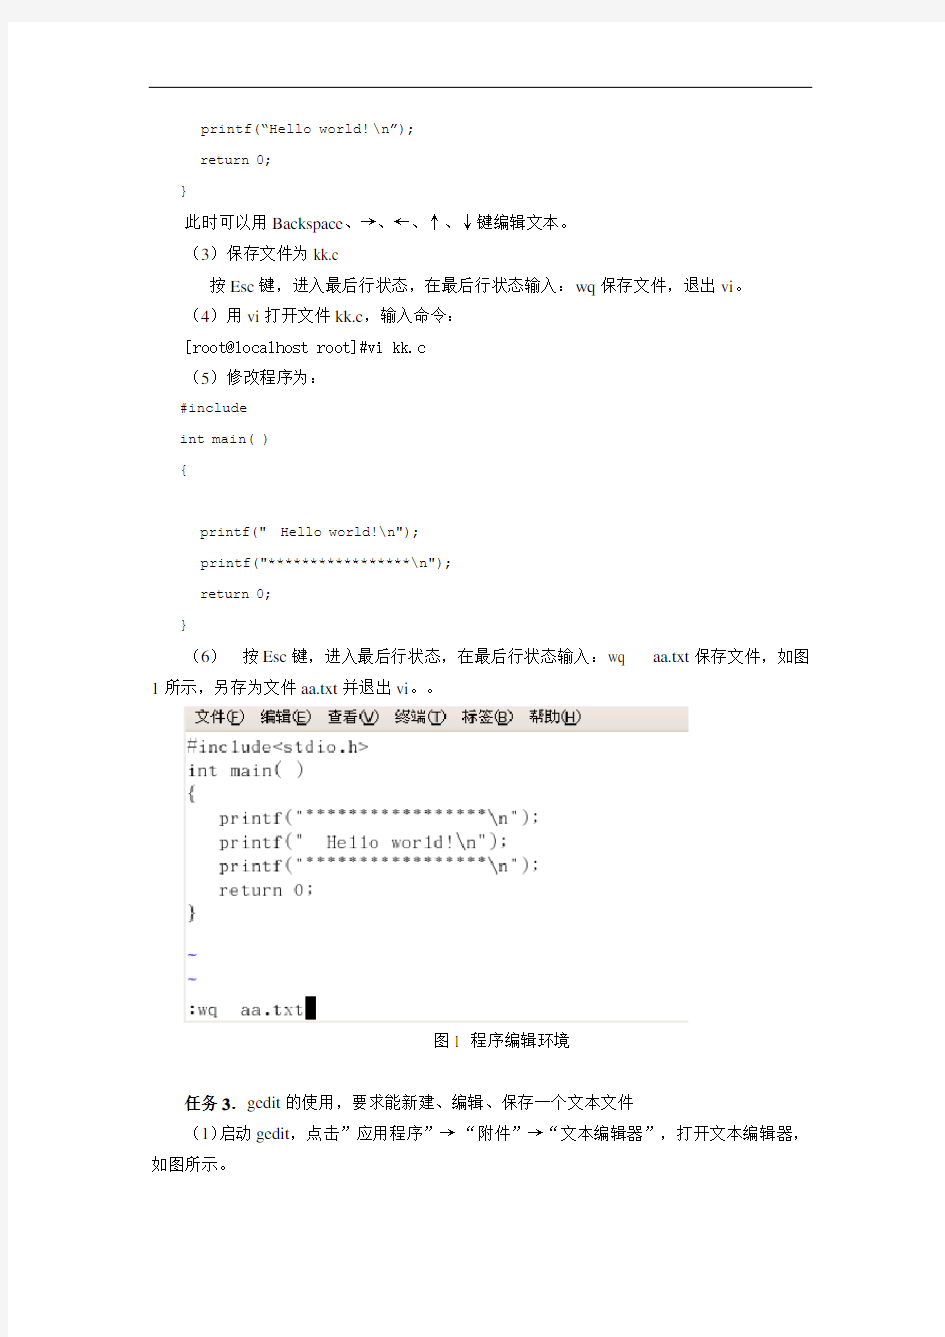 浙江大学Linux程序设计实验报告